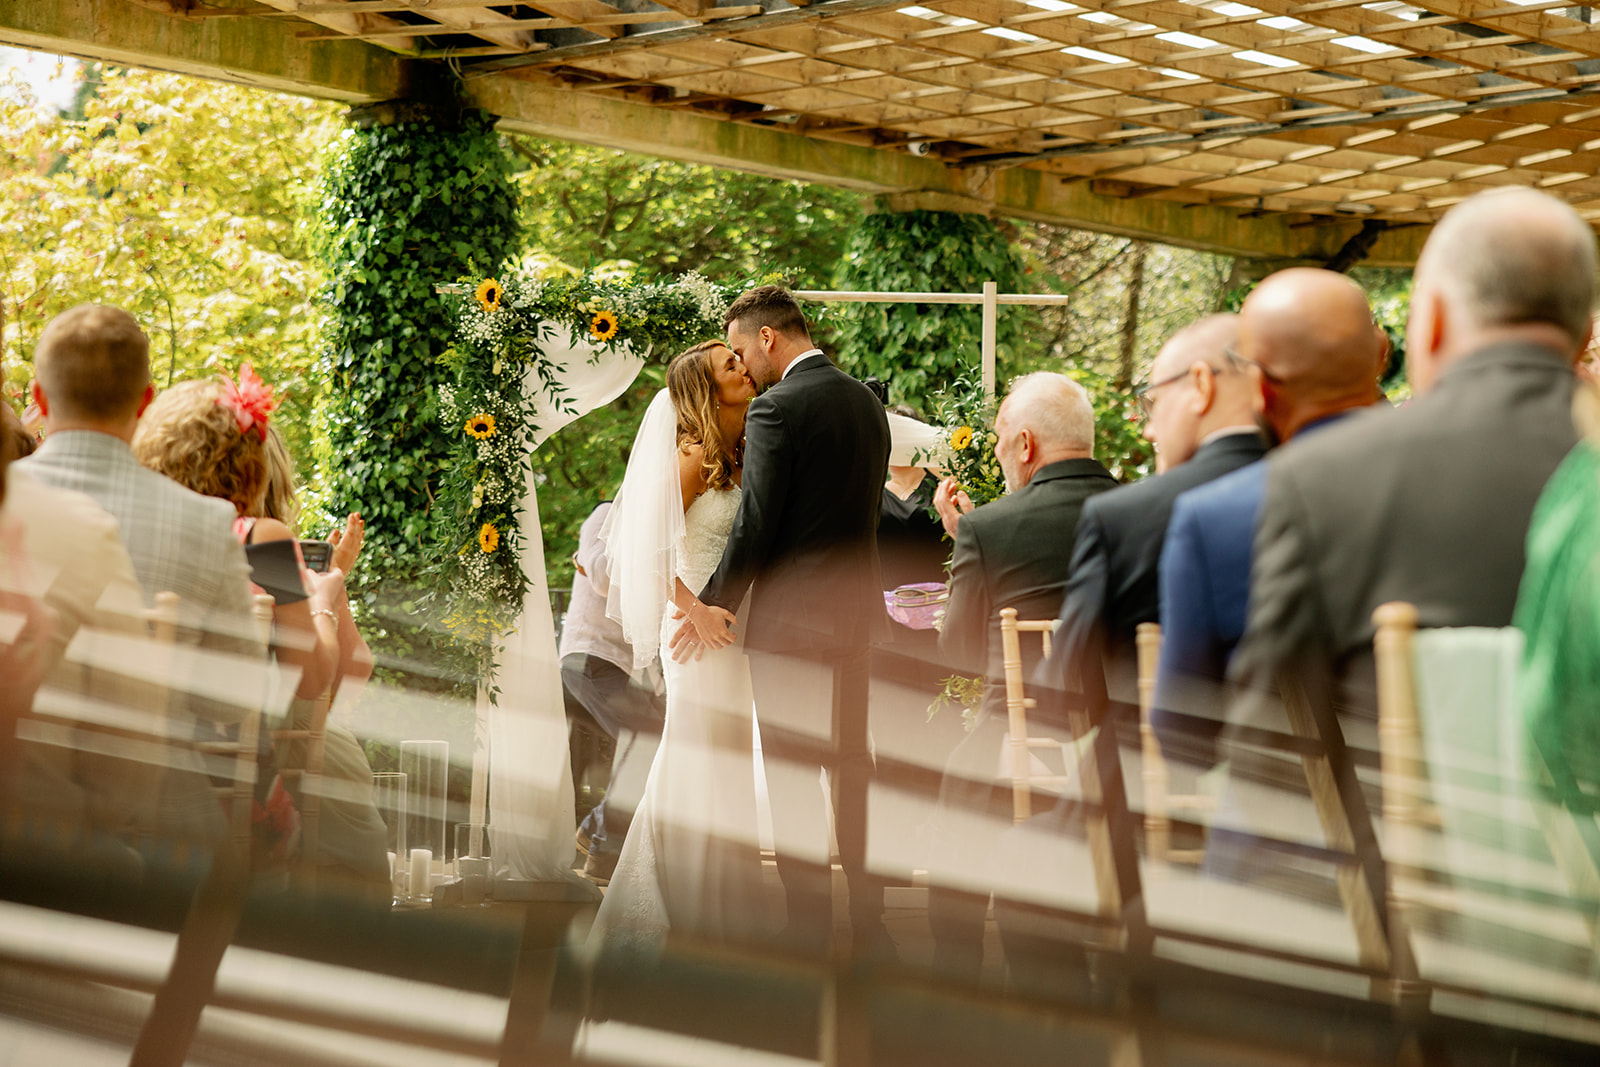 Getting married outdoors in Harrogate 